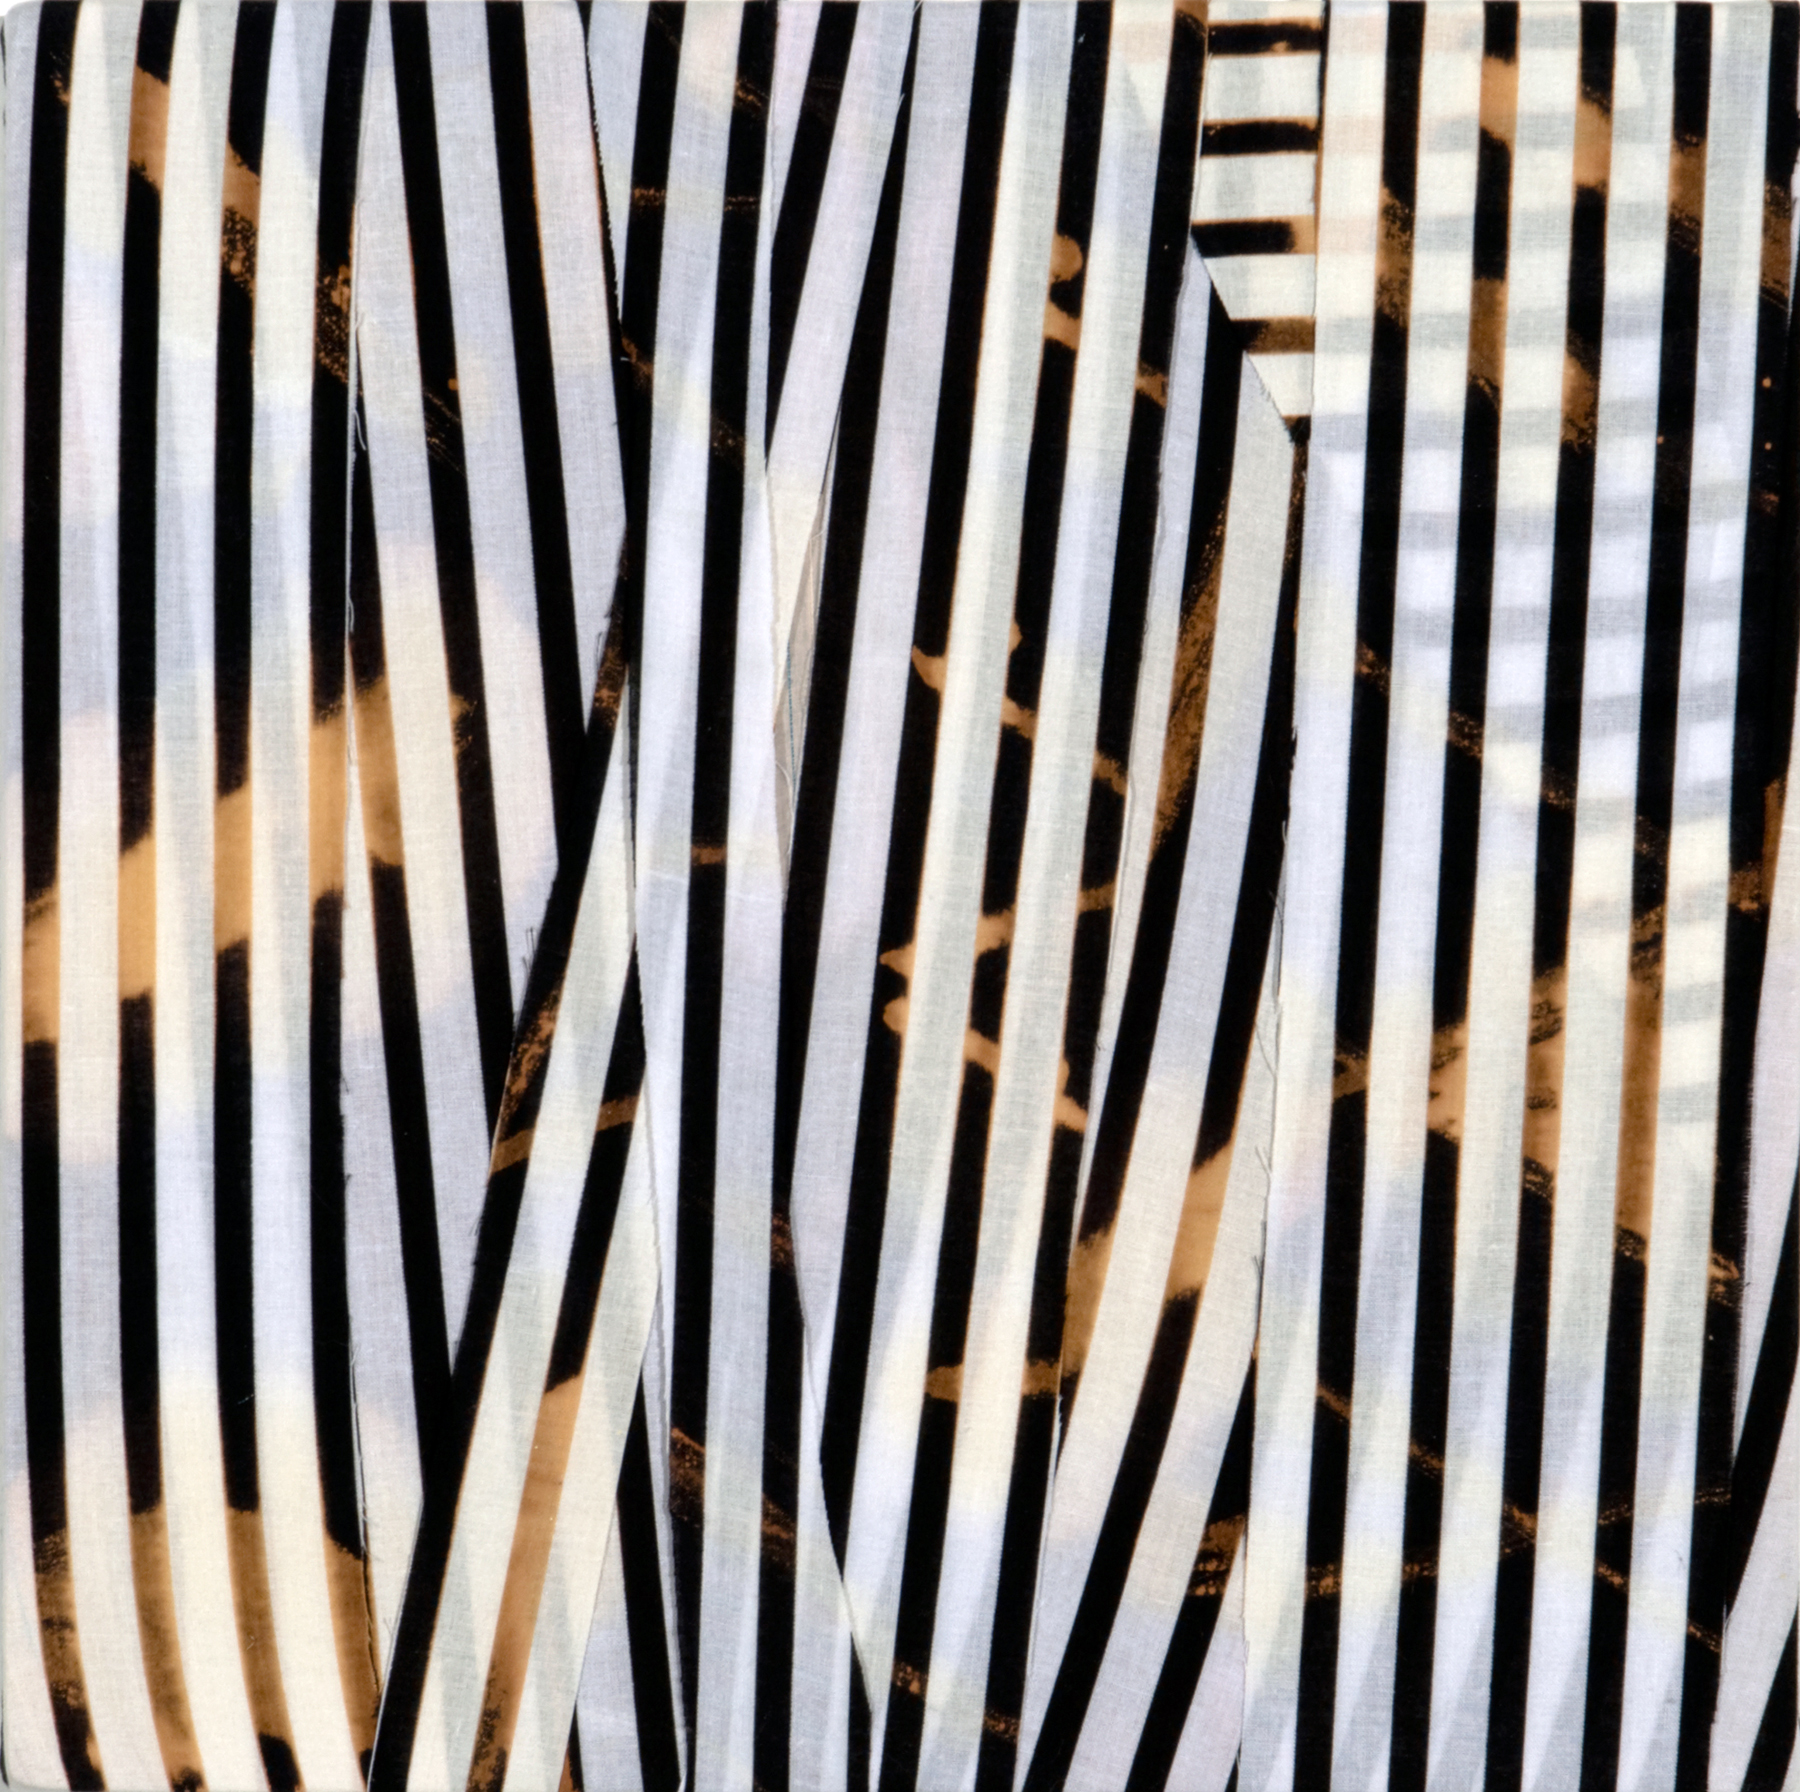   PAMELA JORDEN  [BACK ROOM] &nbsp;Untitled,&nbsp; bleach on cut fabric, 13" x 13", 2011 